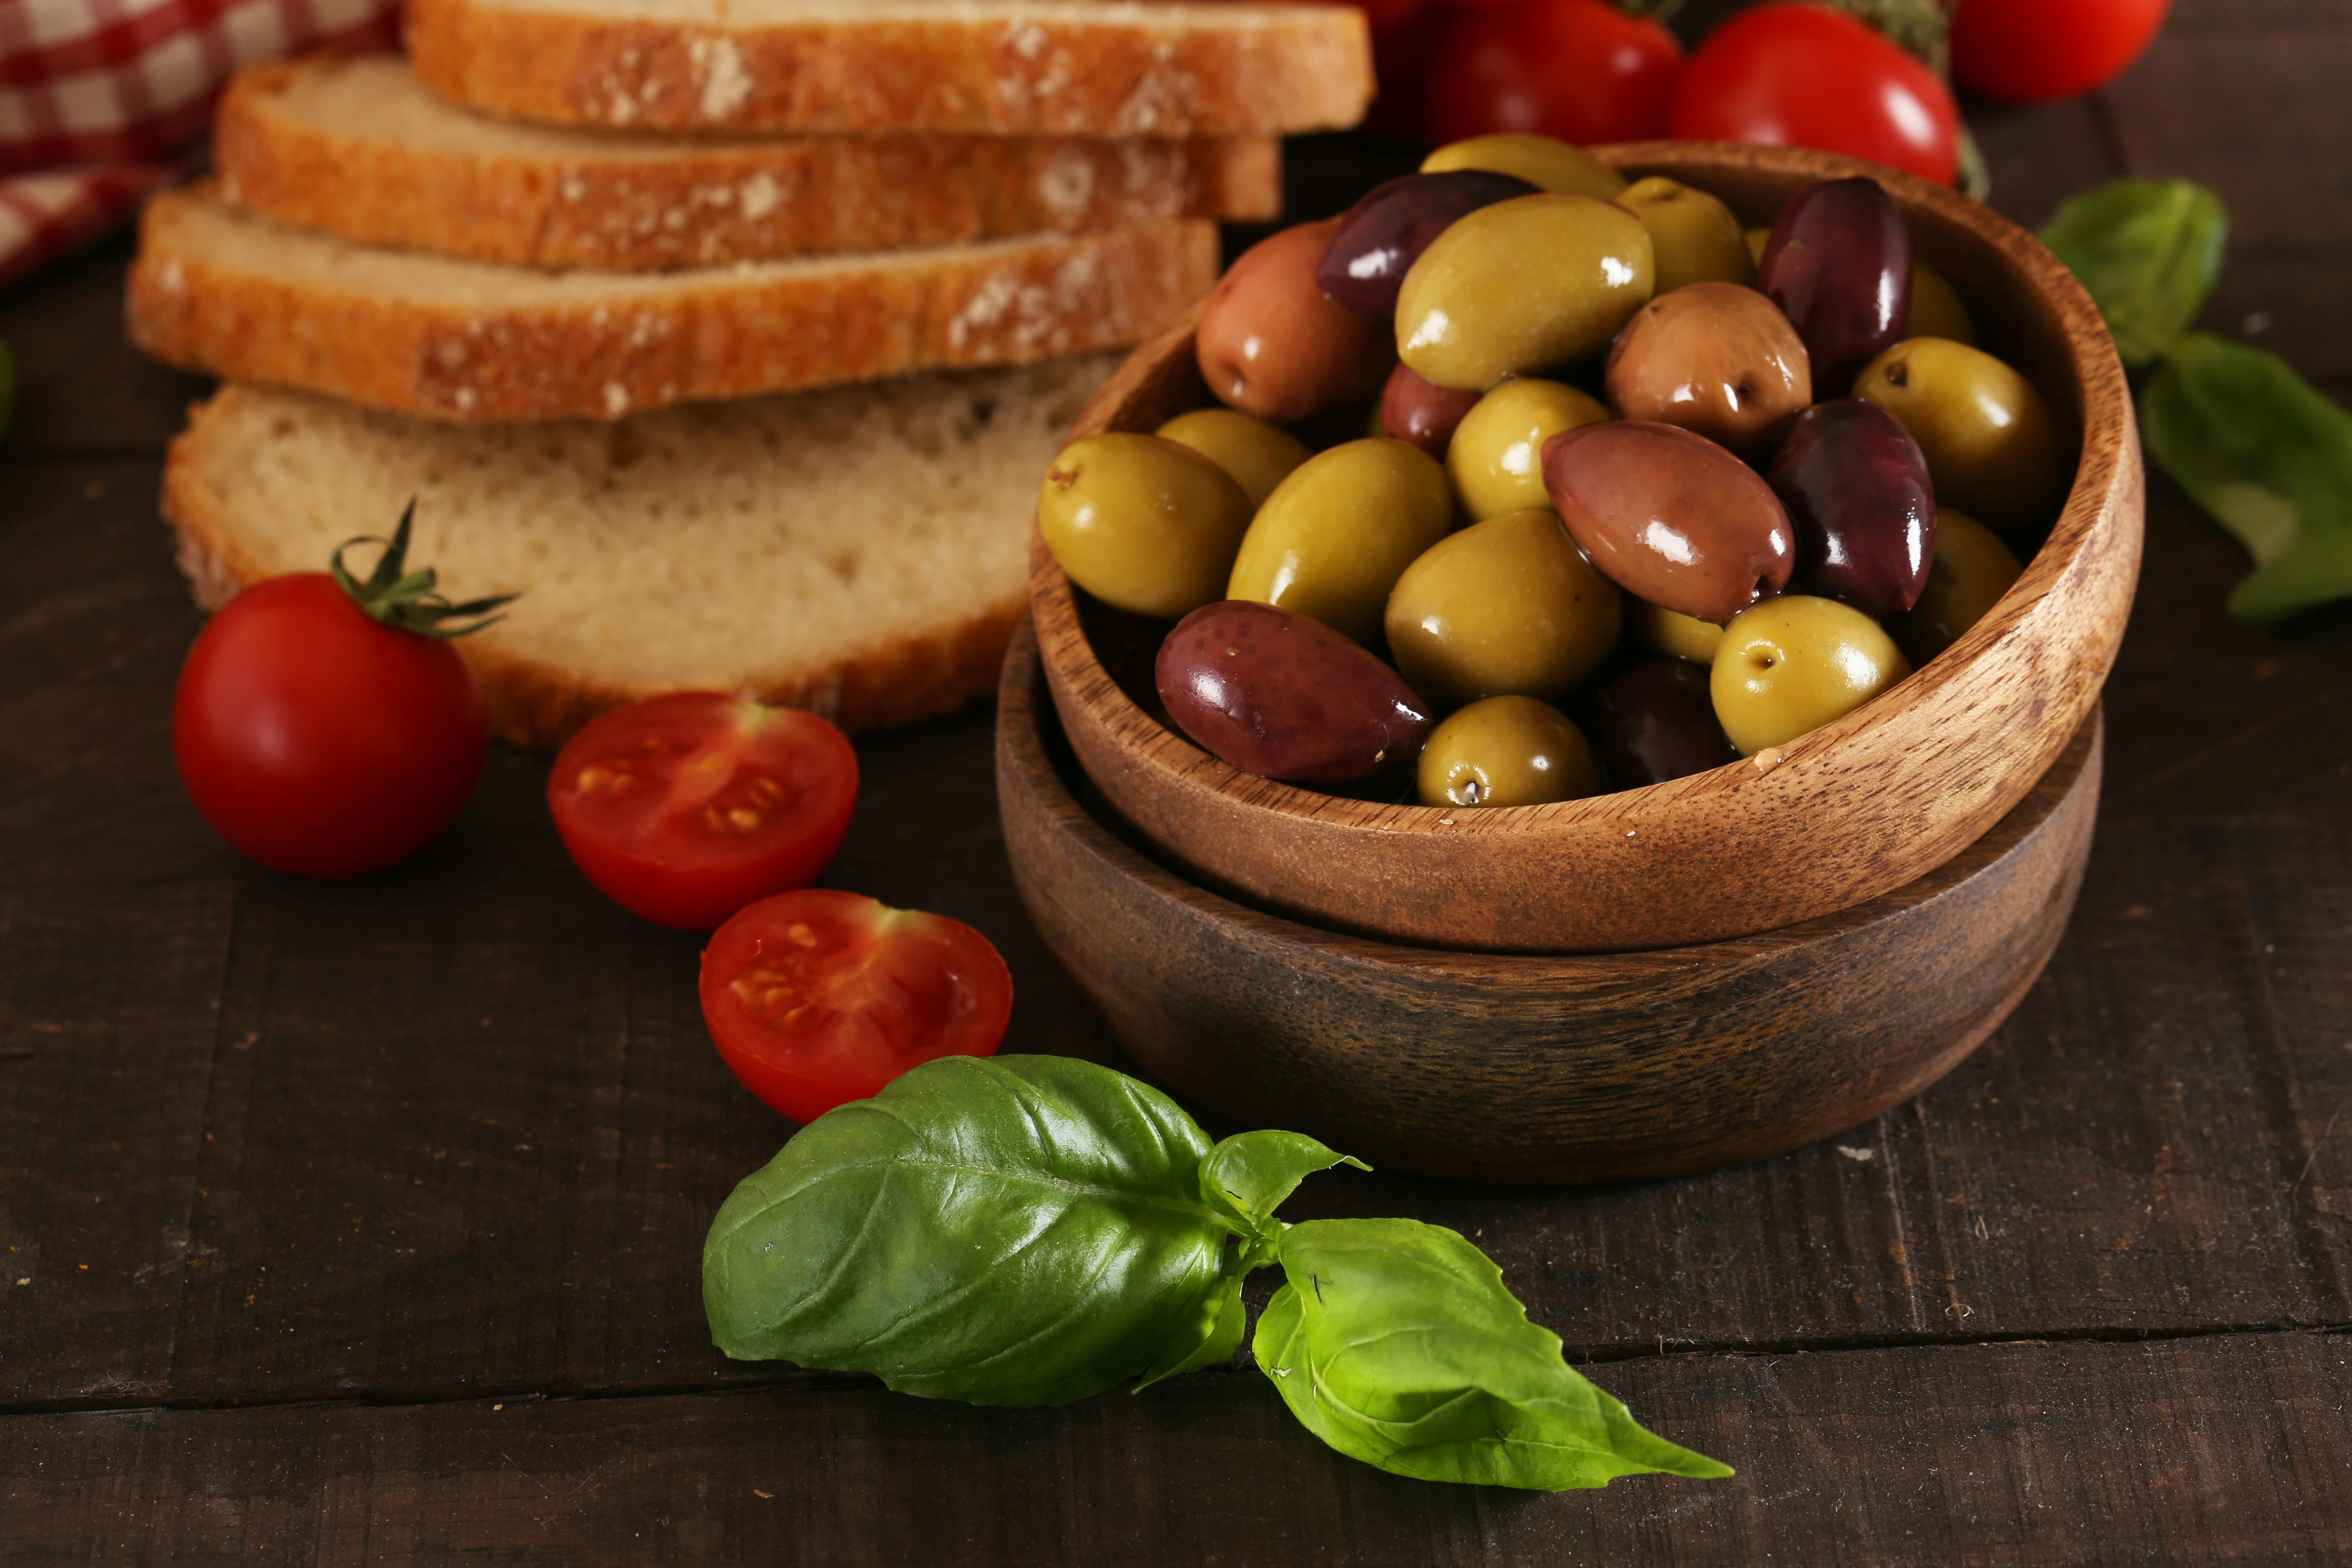 Visite et dégustation d'huile d'olive à la ferme Garra